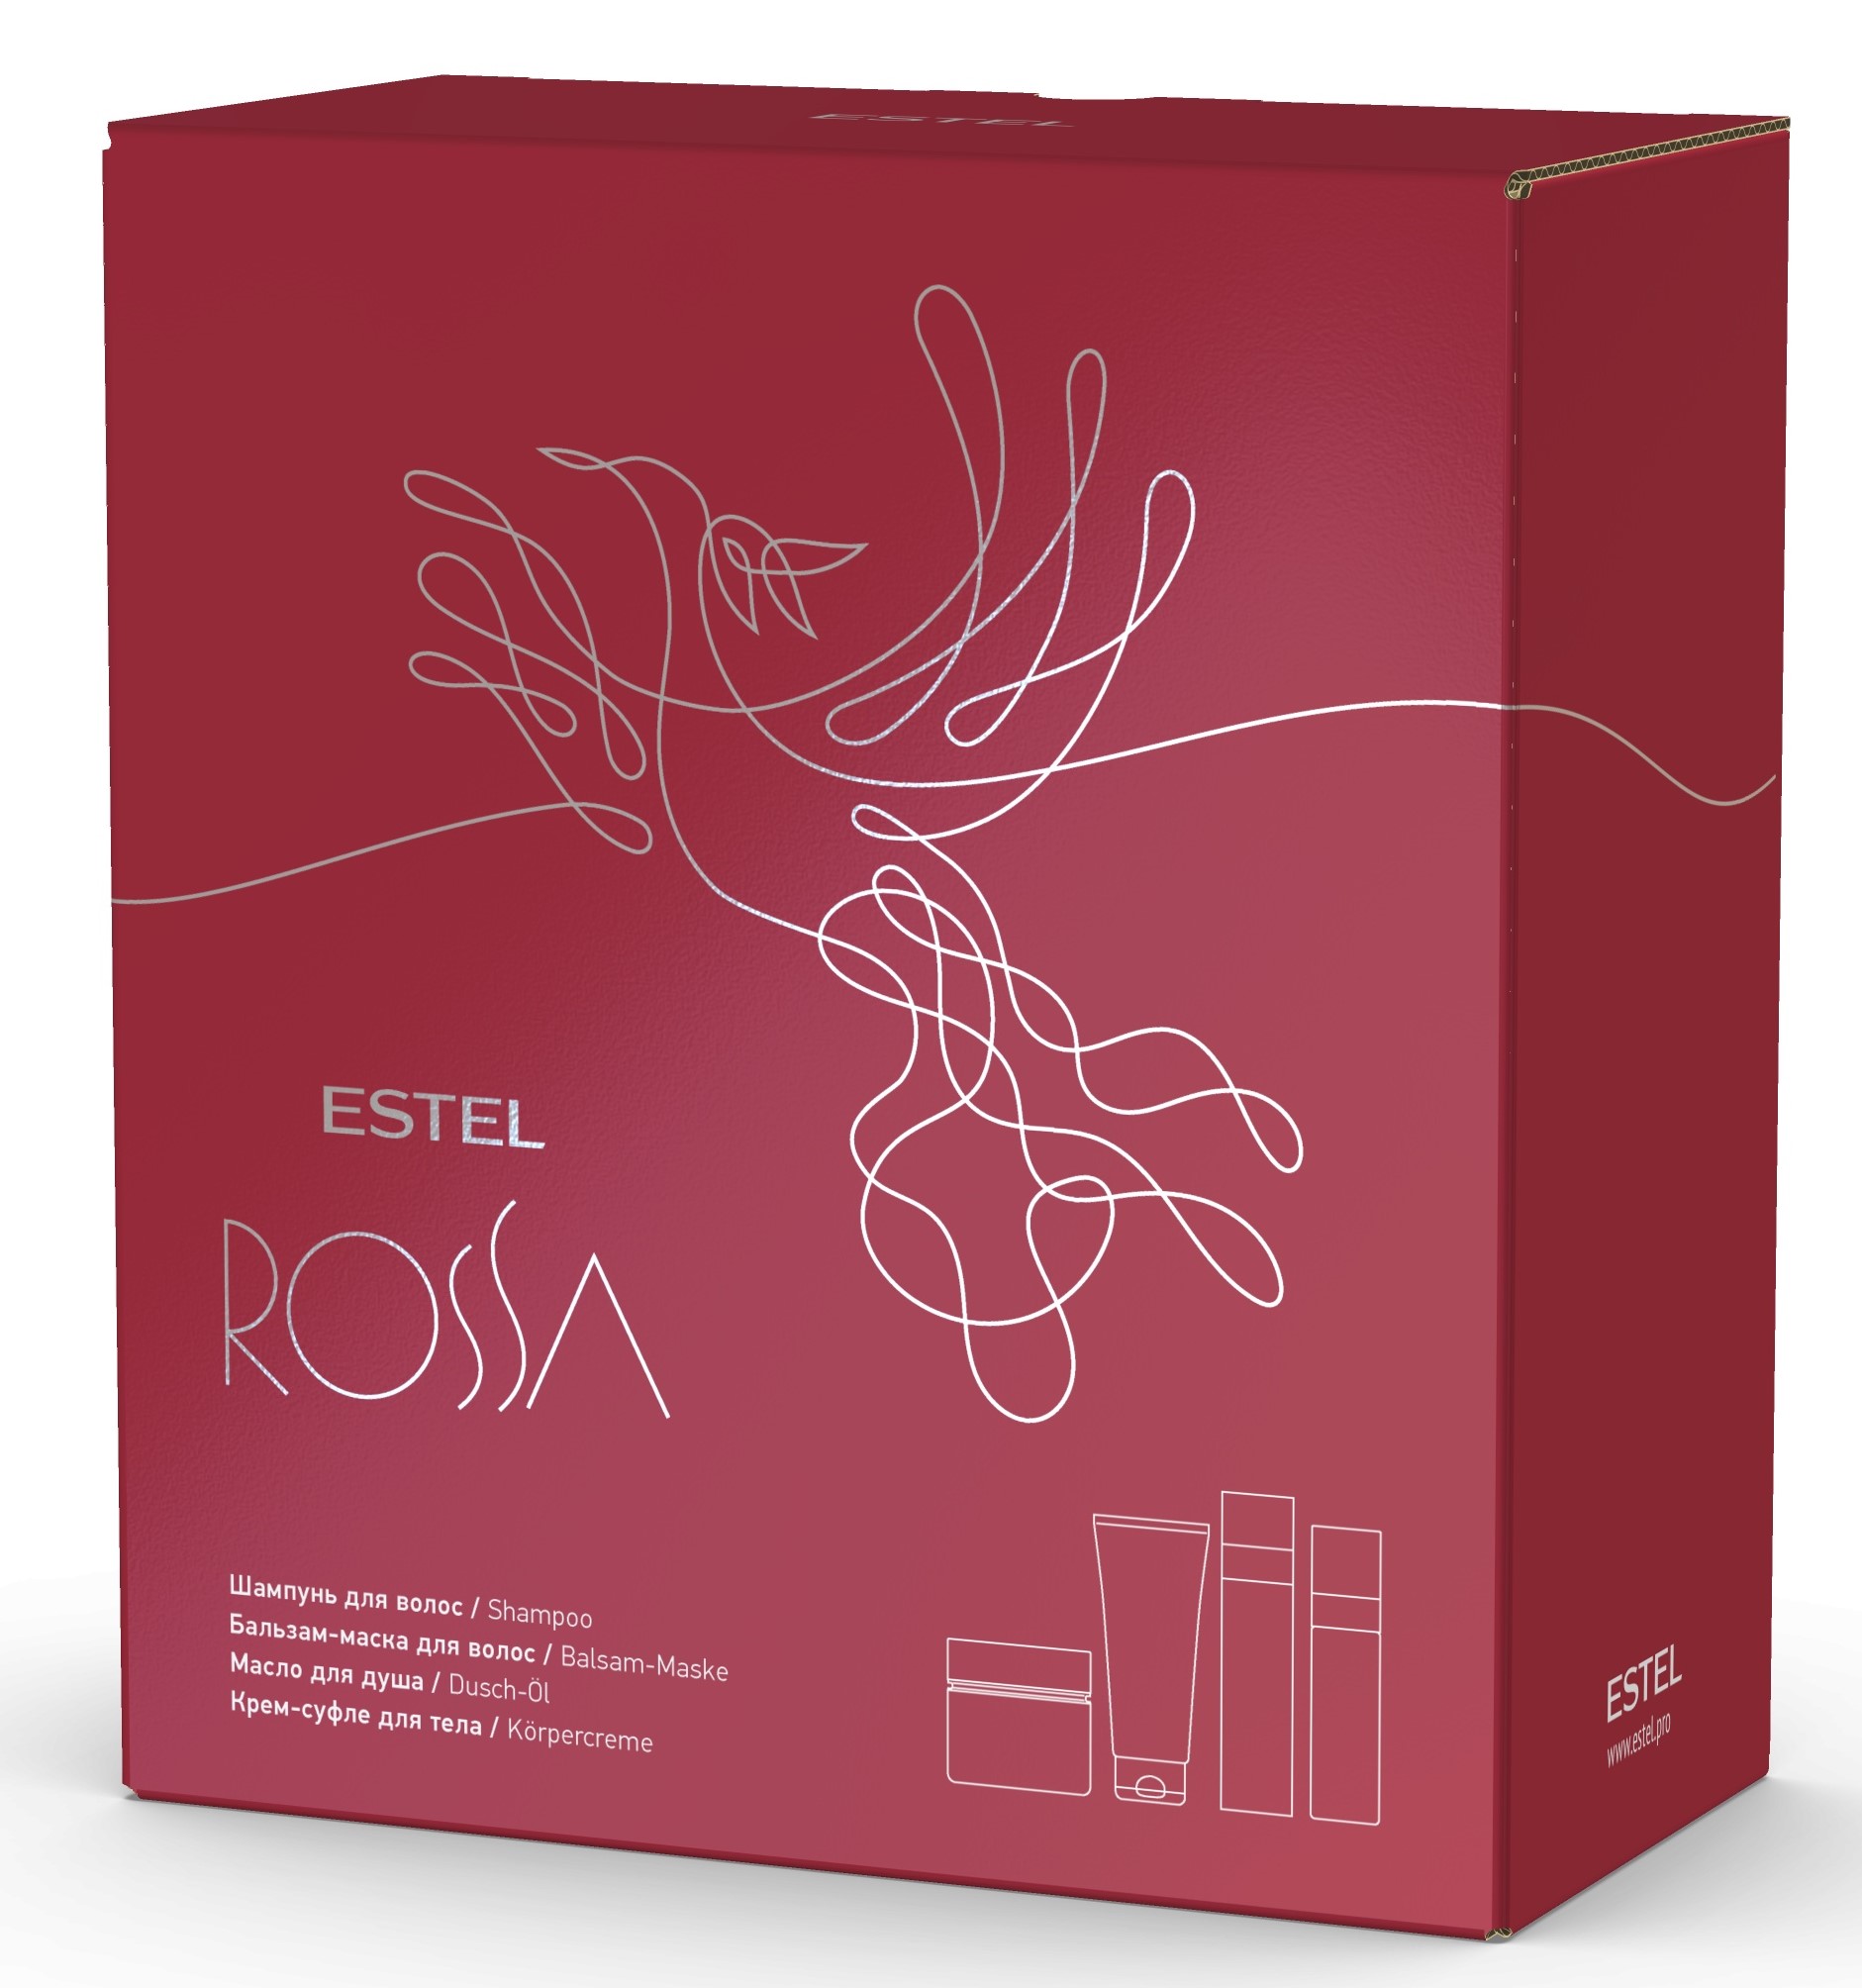 Estel Подарочный набор парфюмерных компаньонов Rossa: шампунь 250 мл + бальзам-маска 200 мл + масло 150 мл + крем-суфле 200 мл (Estel, Rossa)